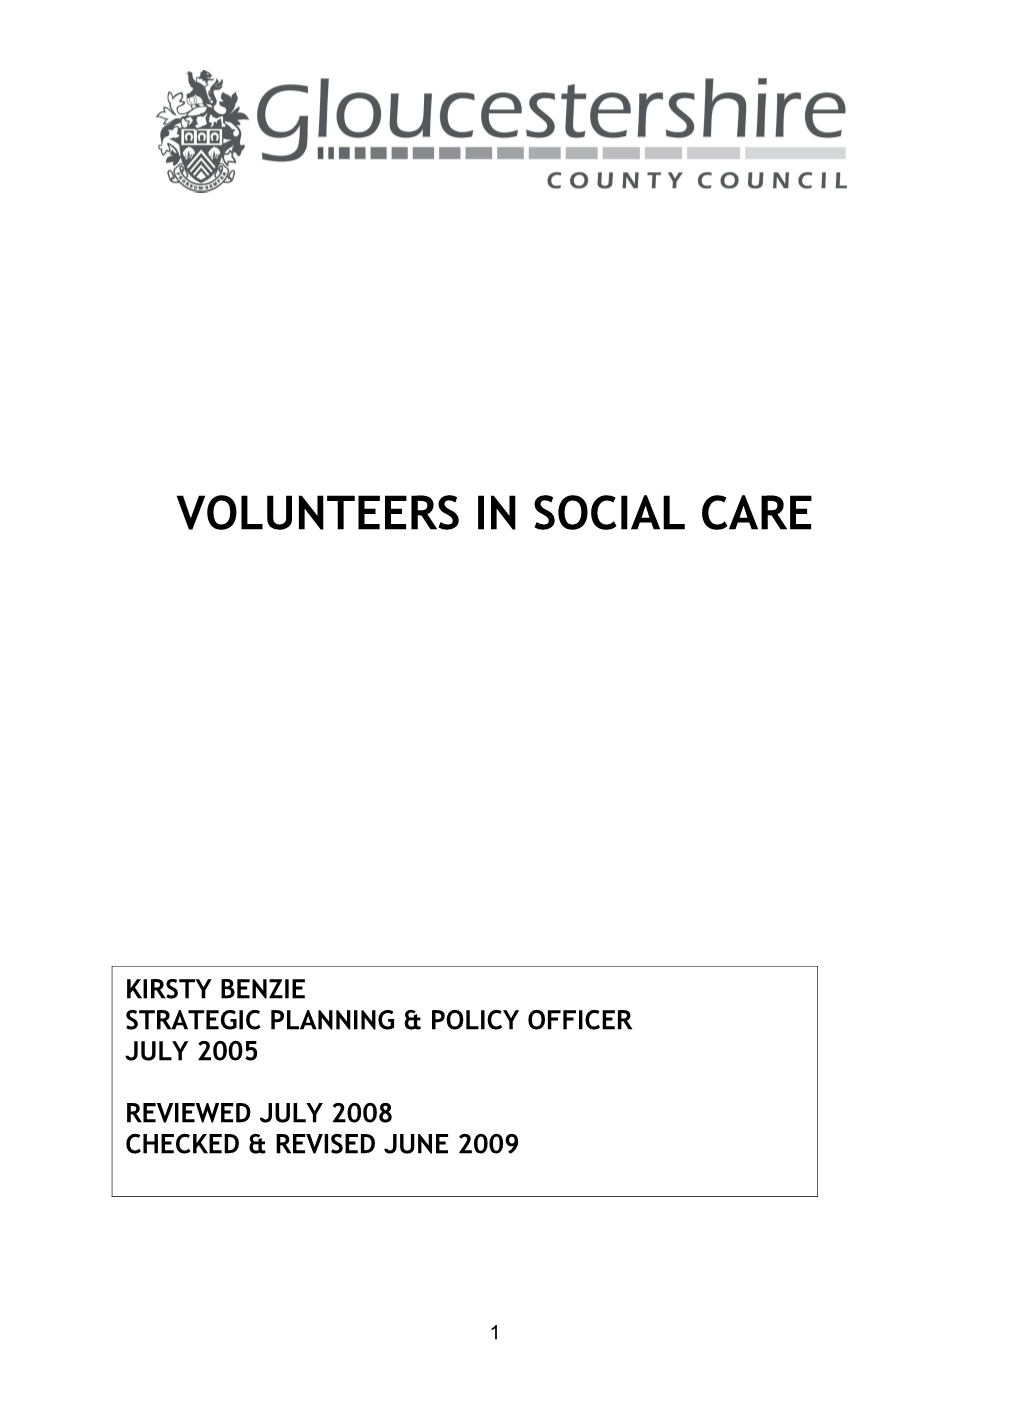 Volunteers in Social Care